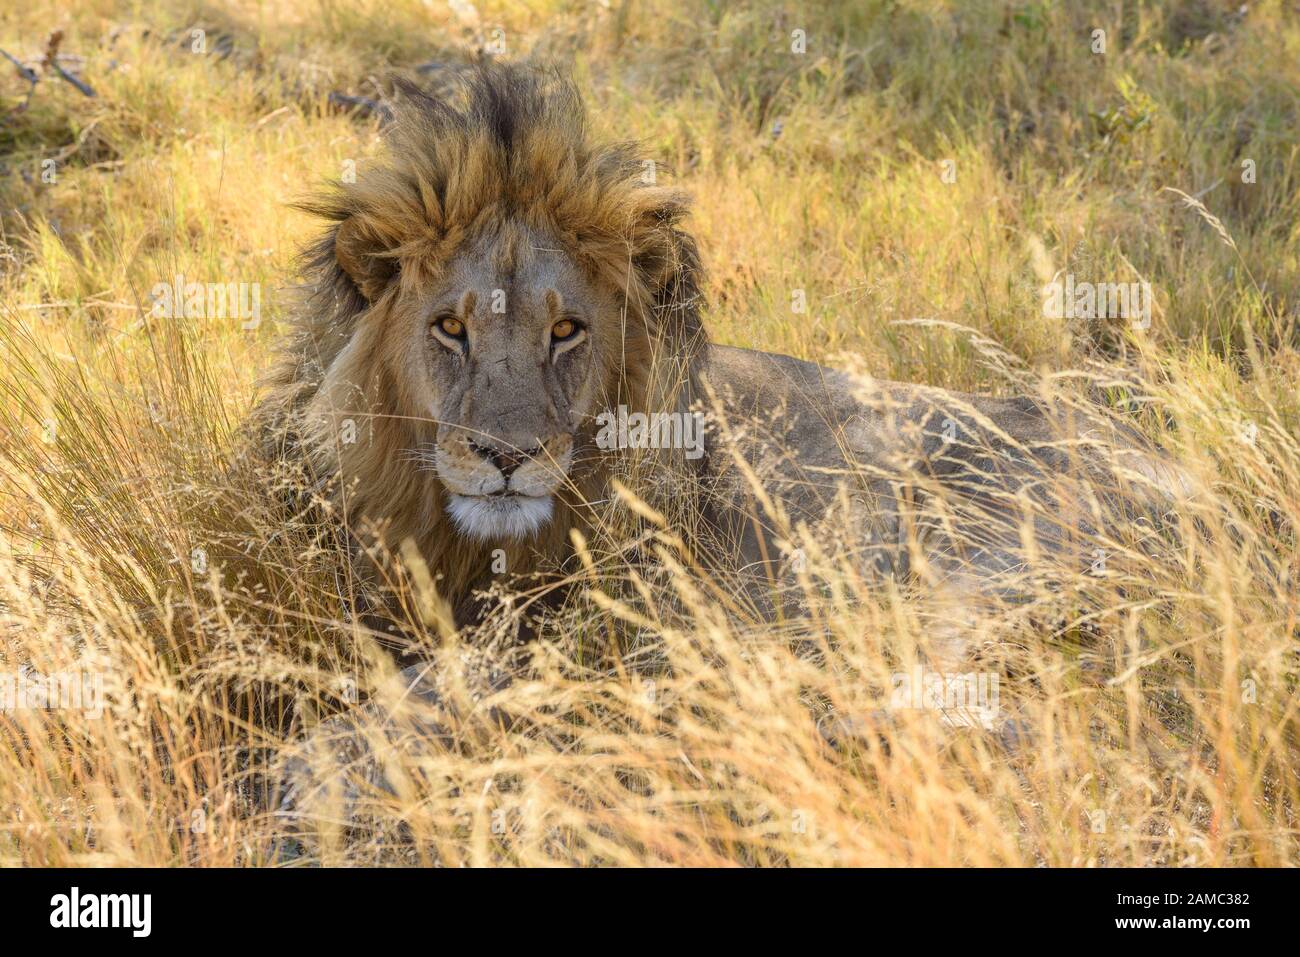 Lion masculin, Panthera leo, en herbe longue, Macatoo, Delta d'Okavango, Botswana Banque D'Images